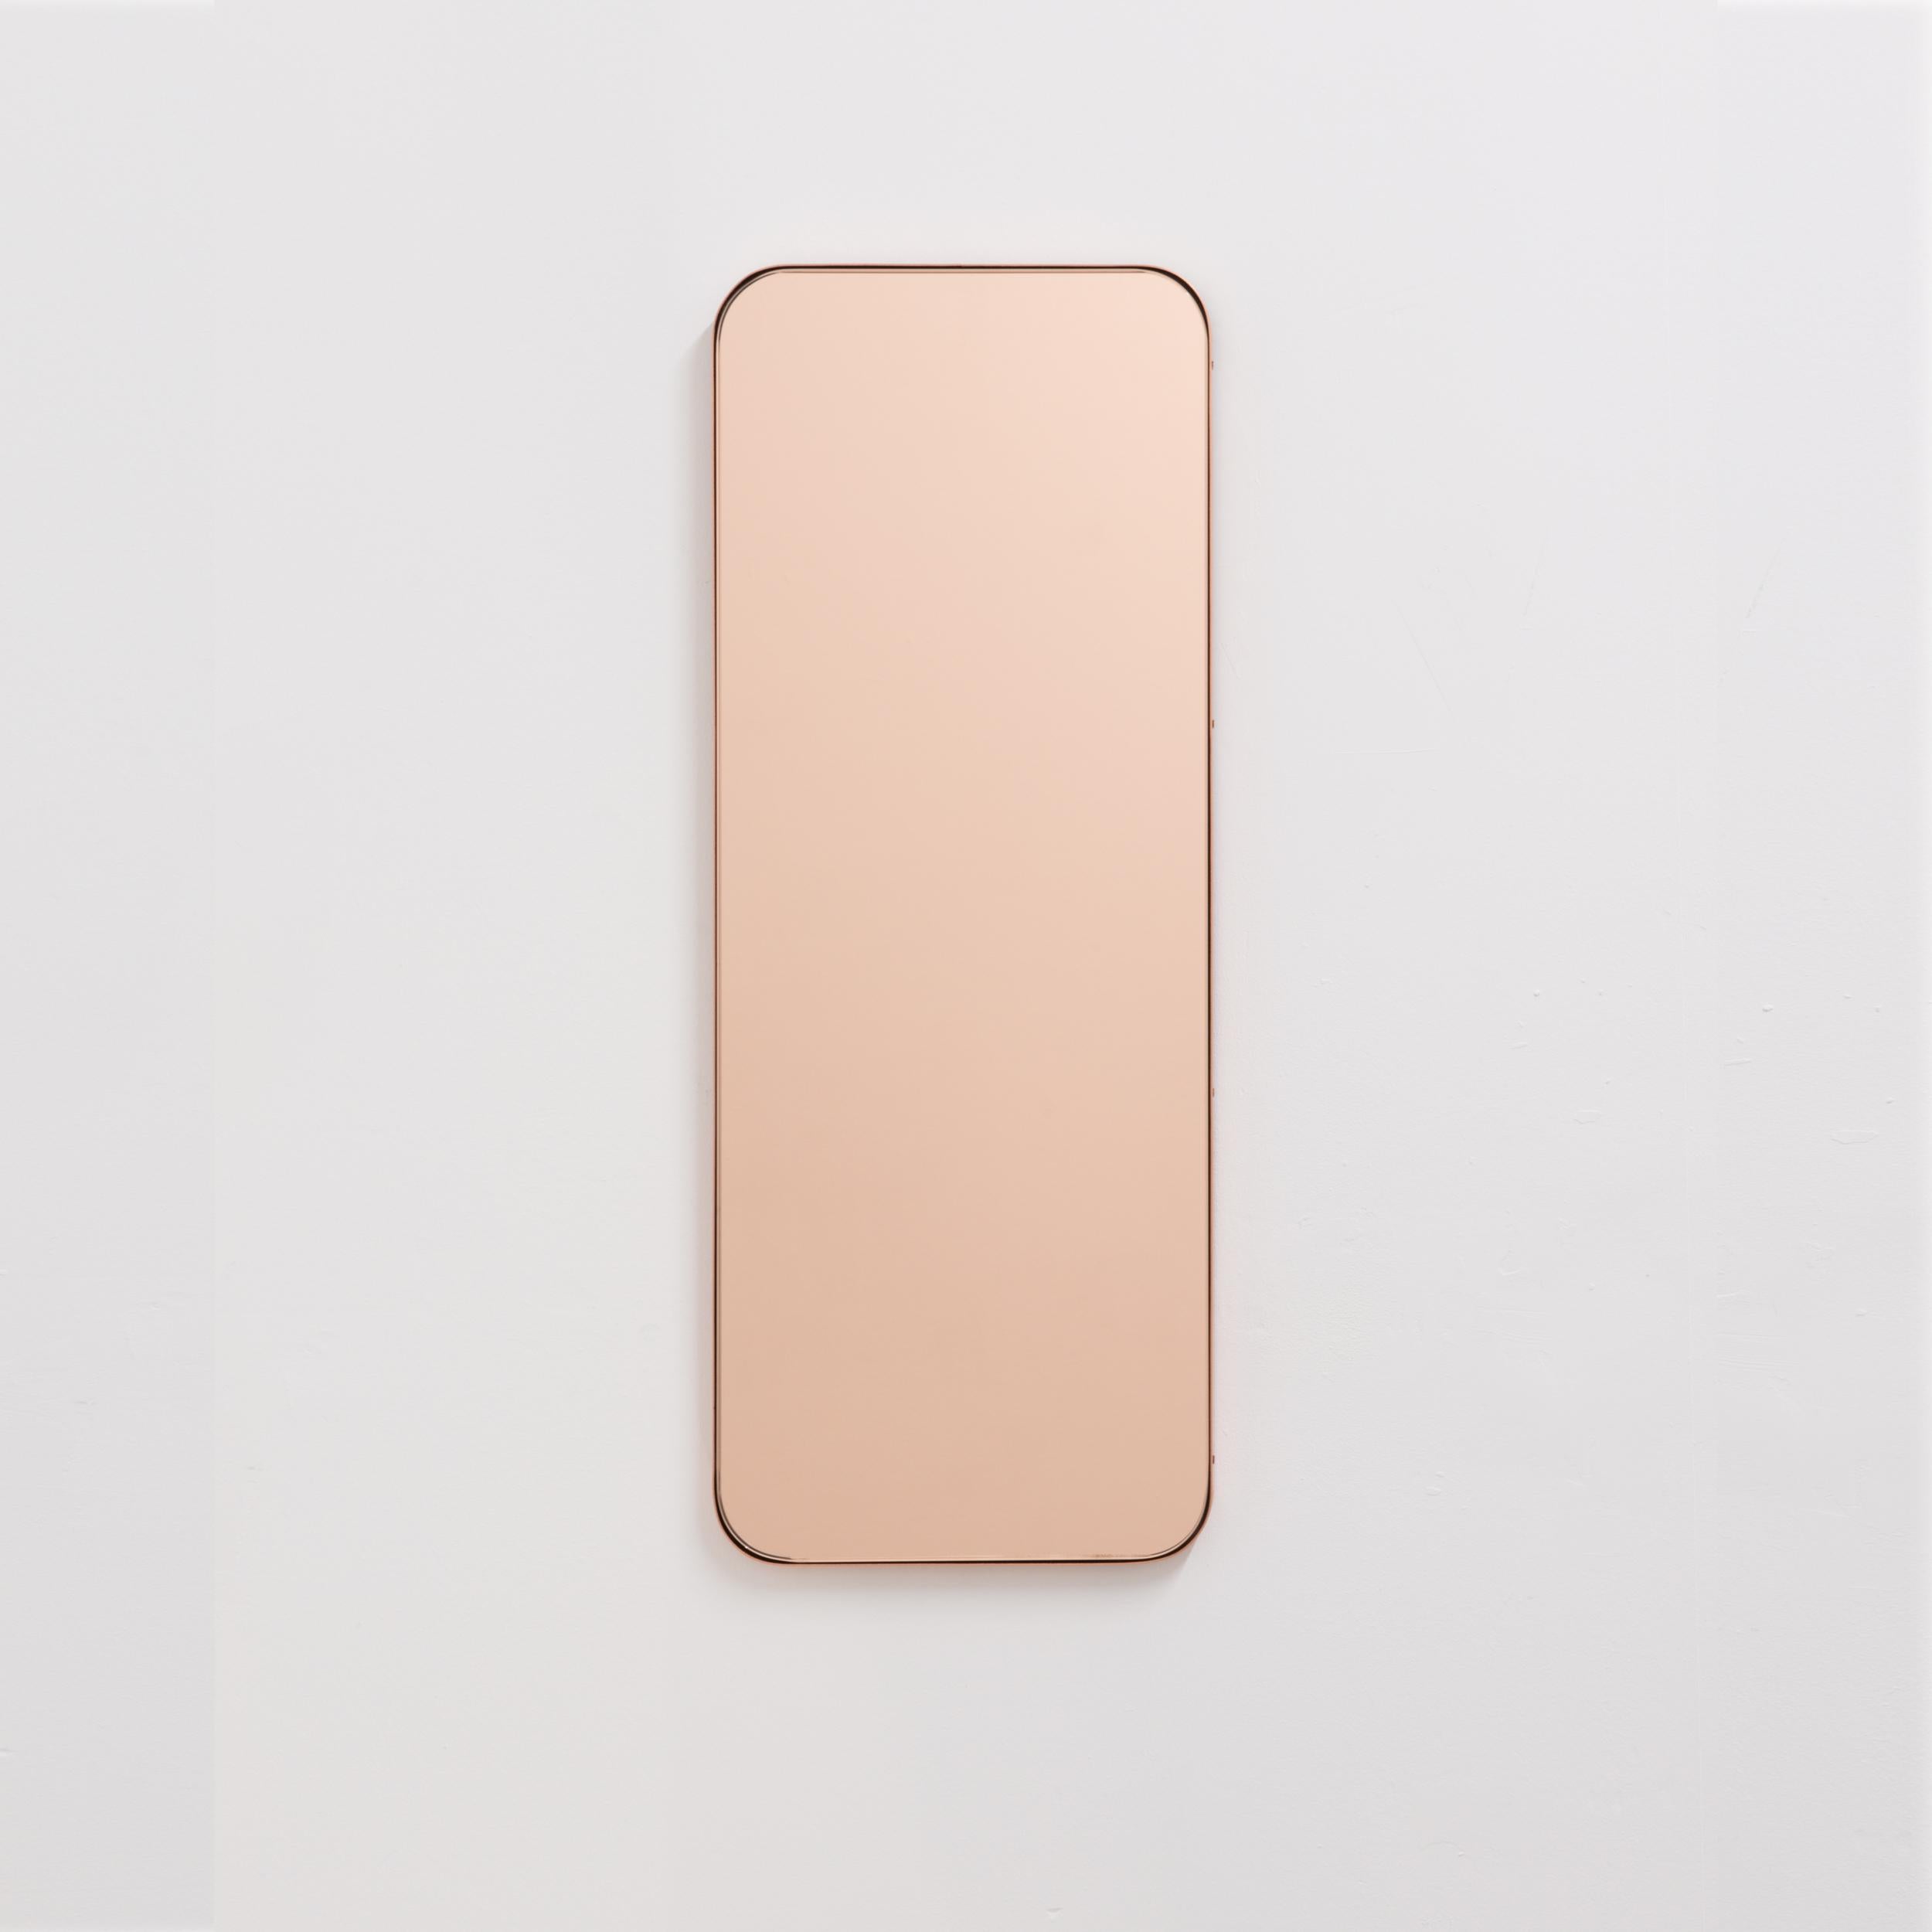 Miroir rectangulaire minimaliste avec un élégant cadre fin en cuivre brossé. Les détails et la finition, y compris les vis visibles plaquées cuivre, soulignent l'aspect artisanal et la qualité du miroir, véritable signature de notre marque. Conçu et